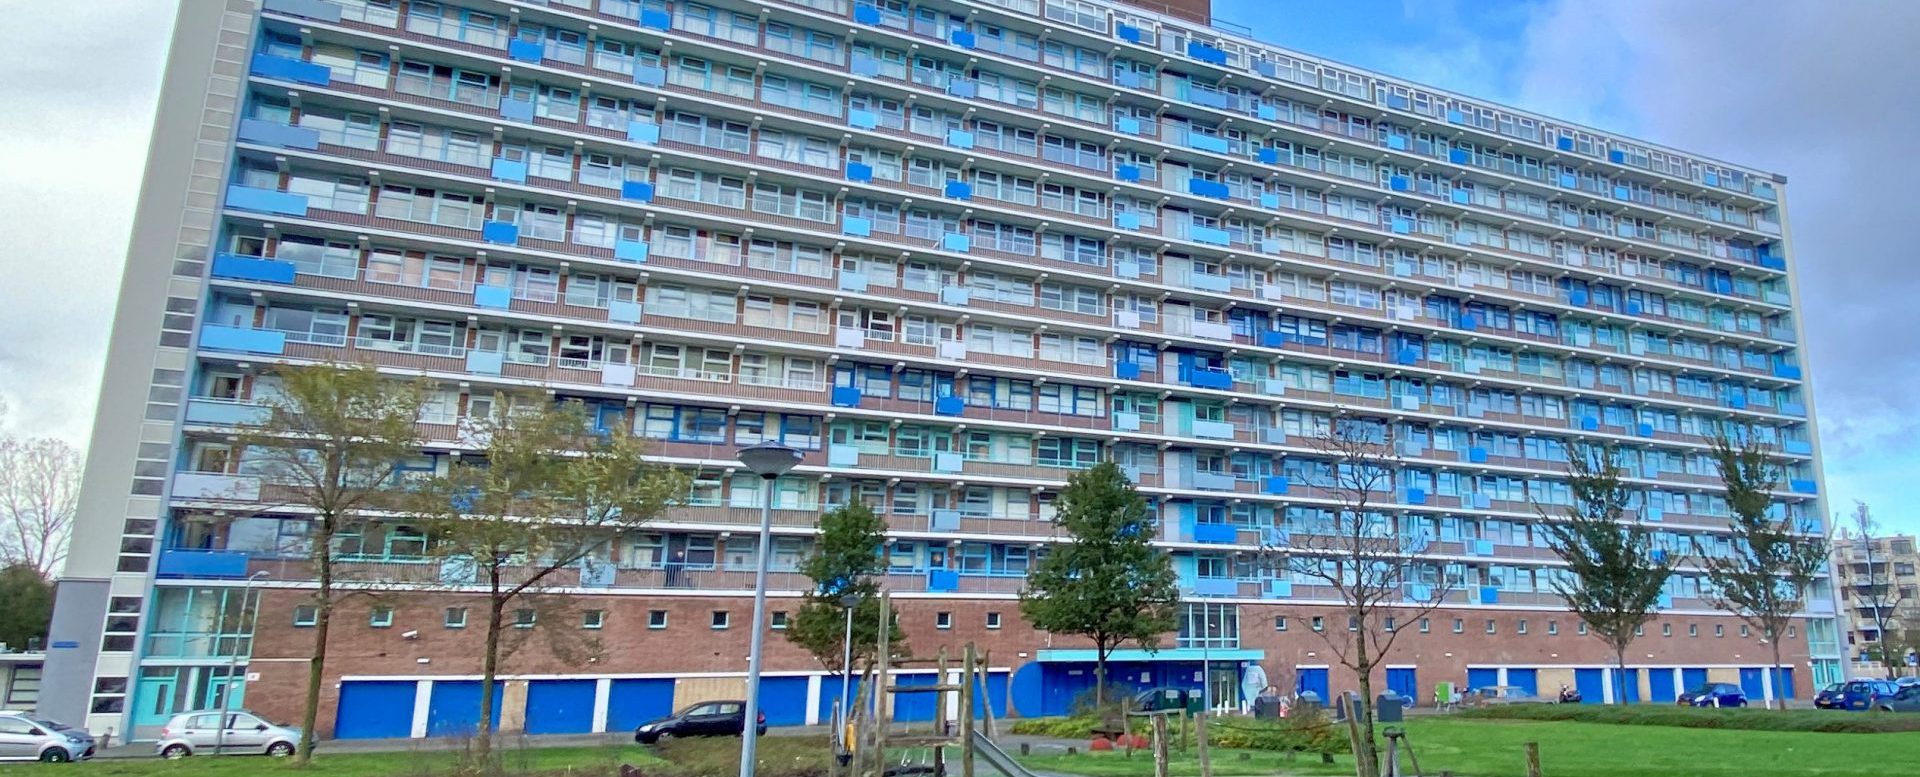 Renovatie Torenflats te Katwijk